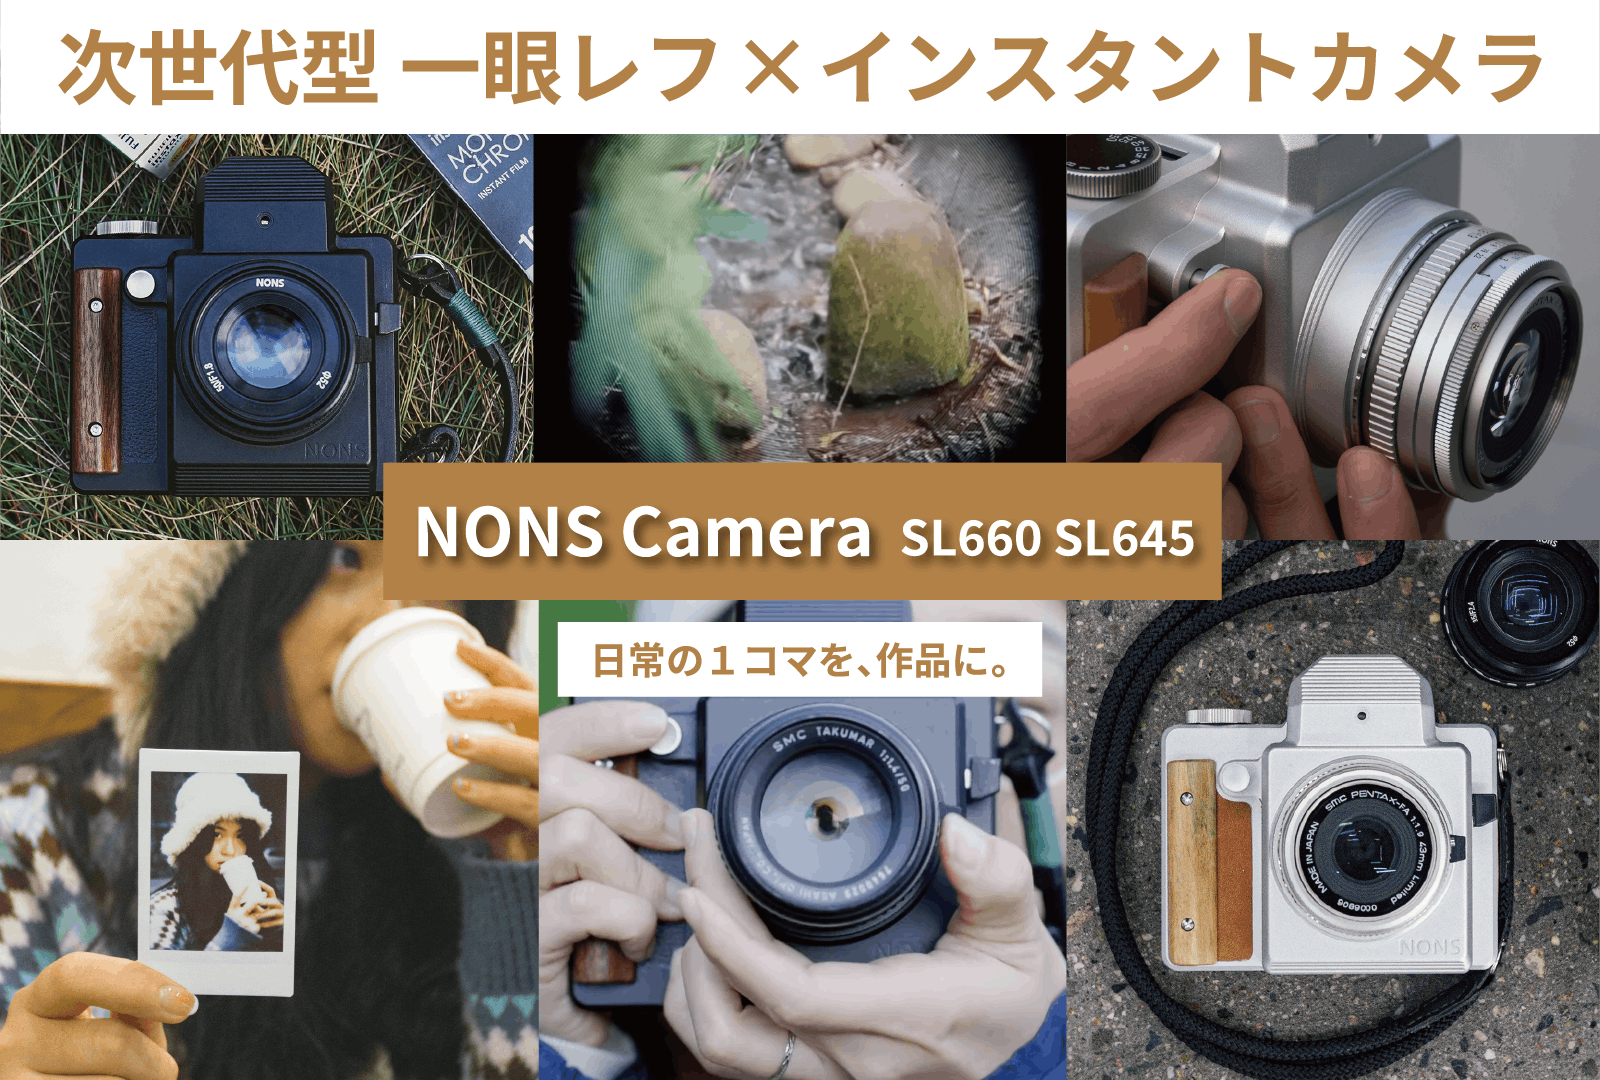 一眼レンズの付け替え可能！次世代型インスタントカメラ|NONS Camera - CAMPFIRE (キャンプファイヤー)